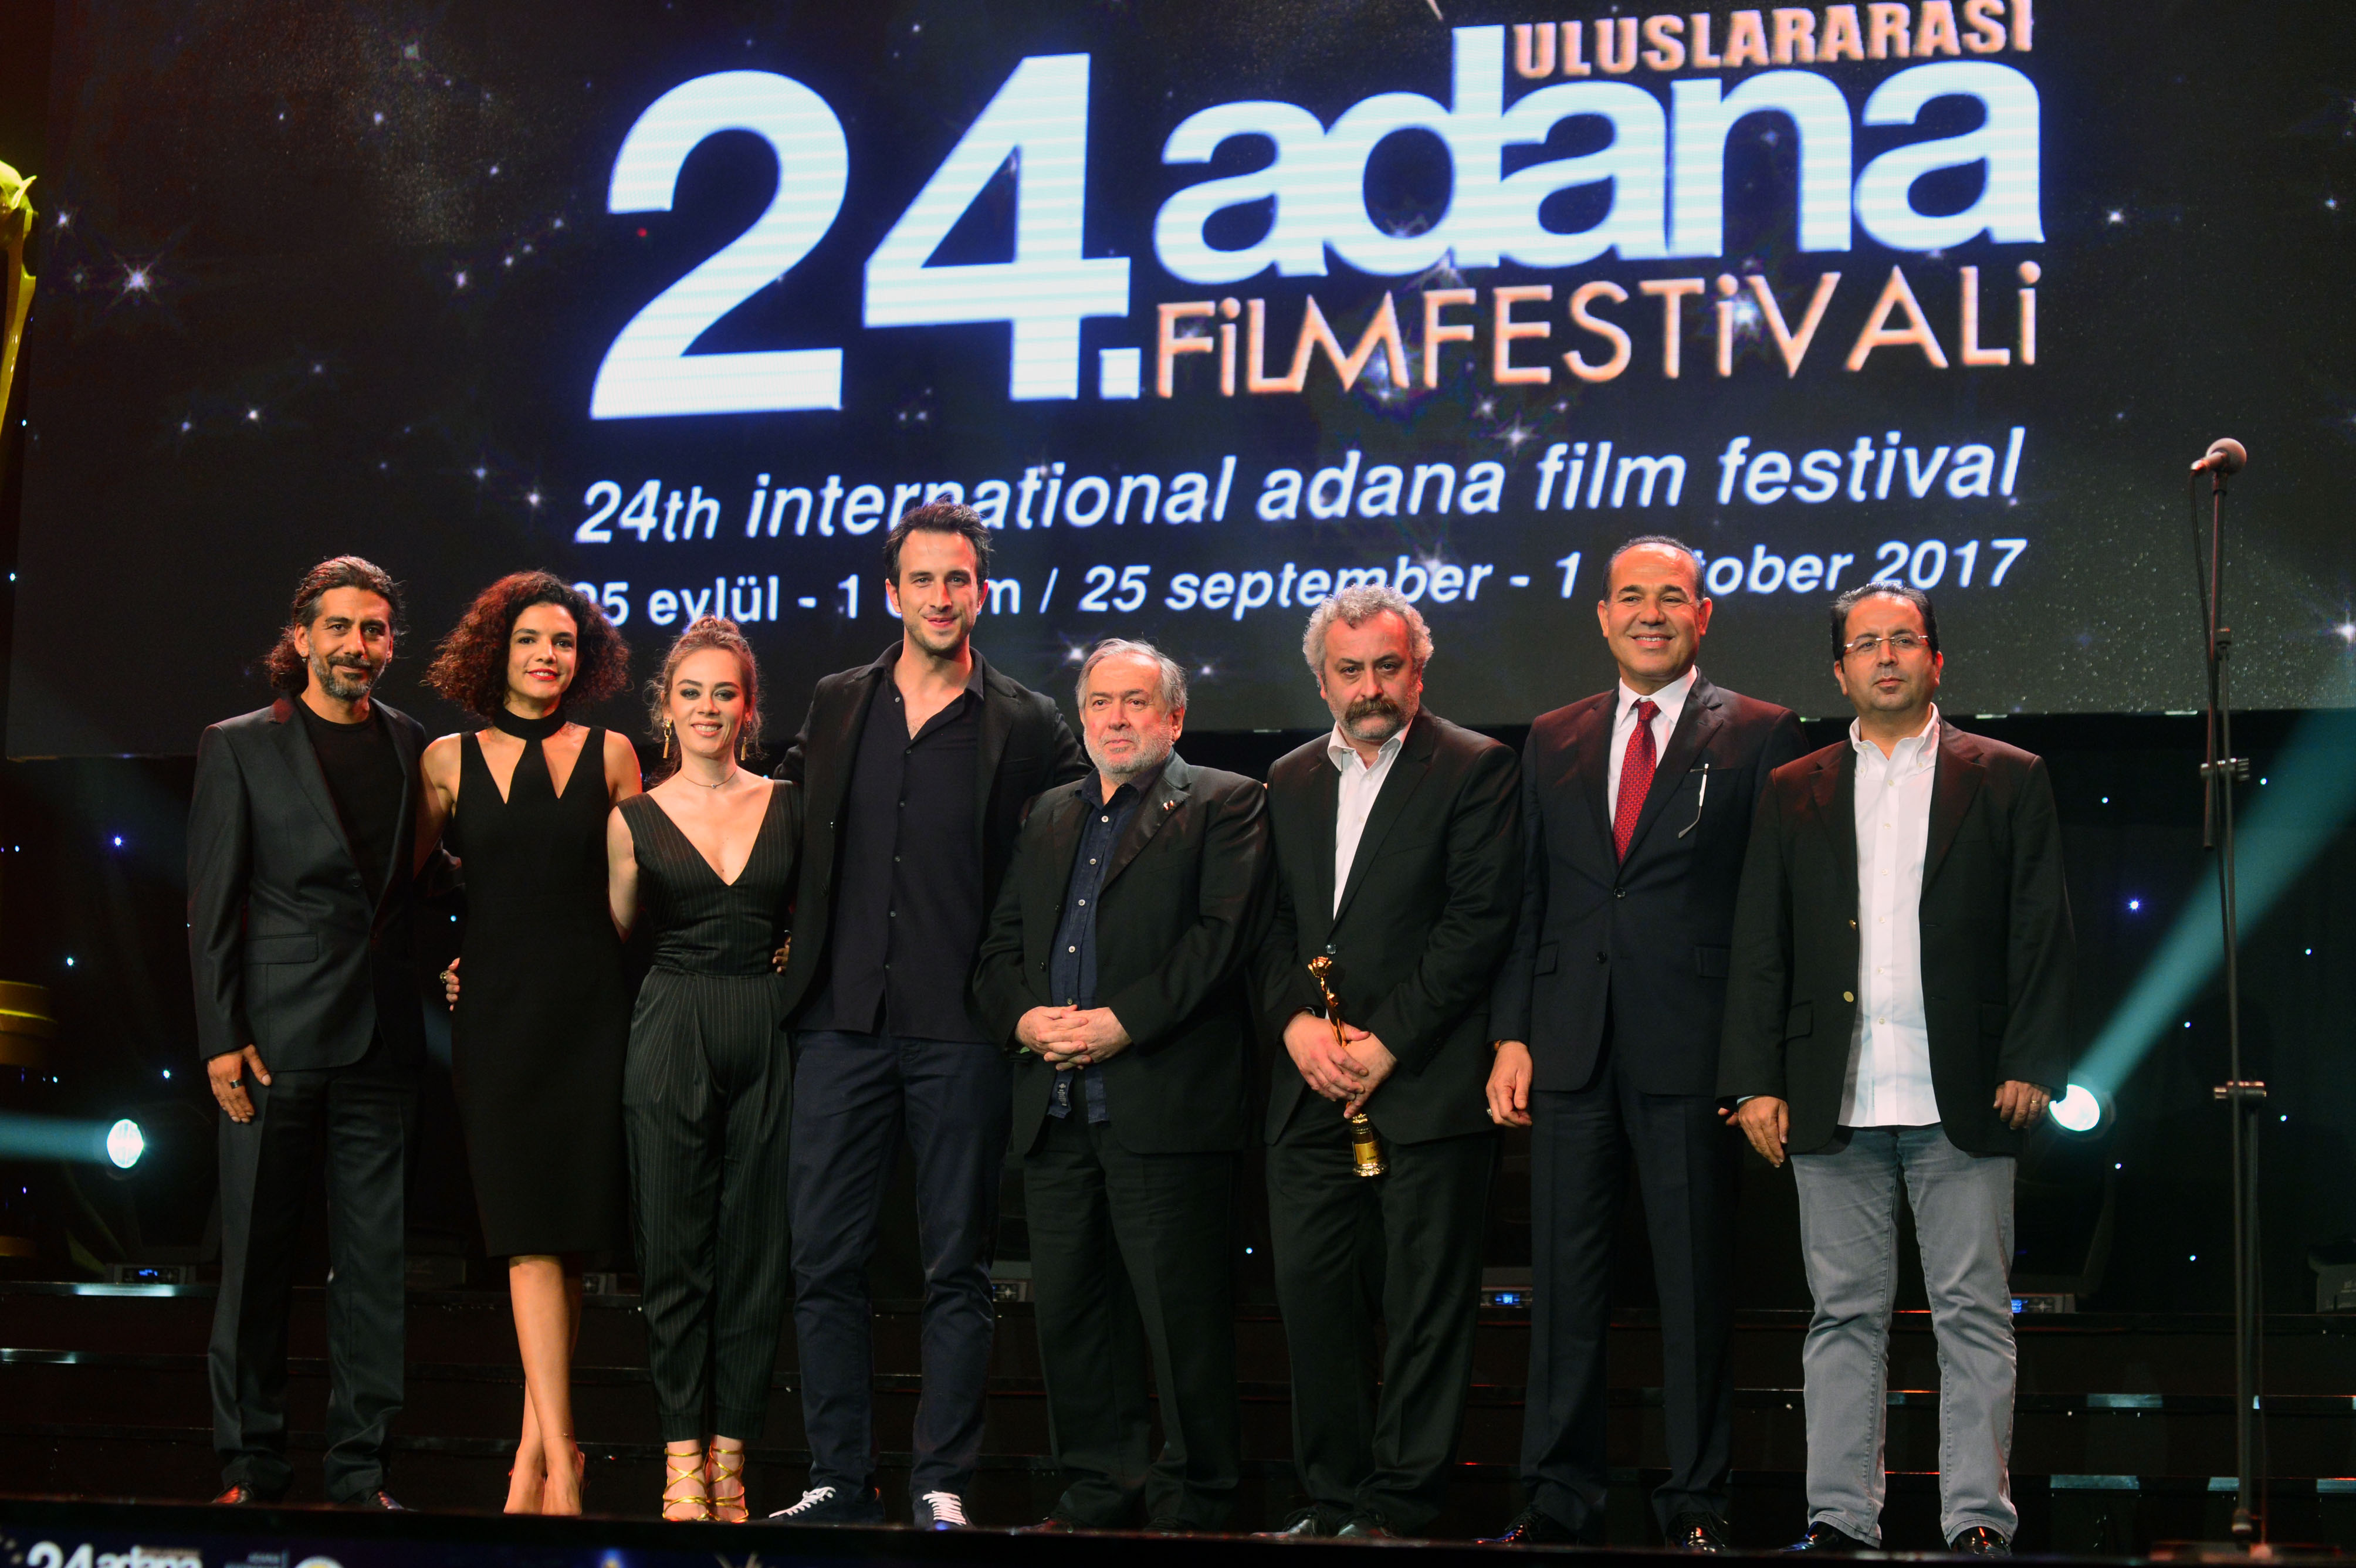 Uluslararası Adana Film Festivali'nde en iyi film, "Aşkın Gören Gözlere İhtiyacı Yok" oldu